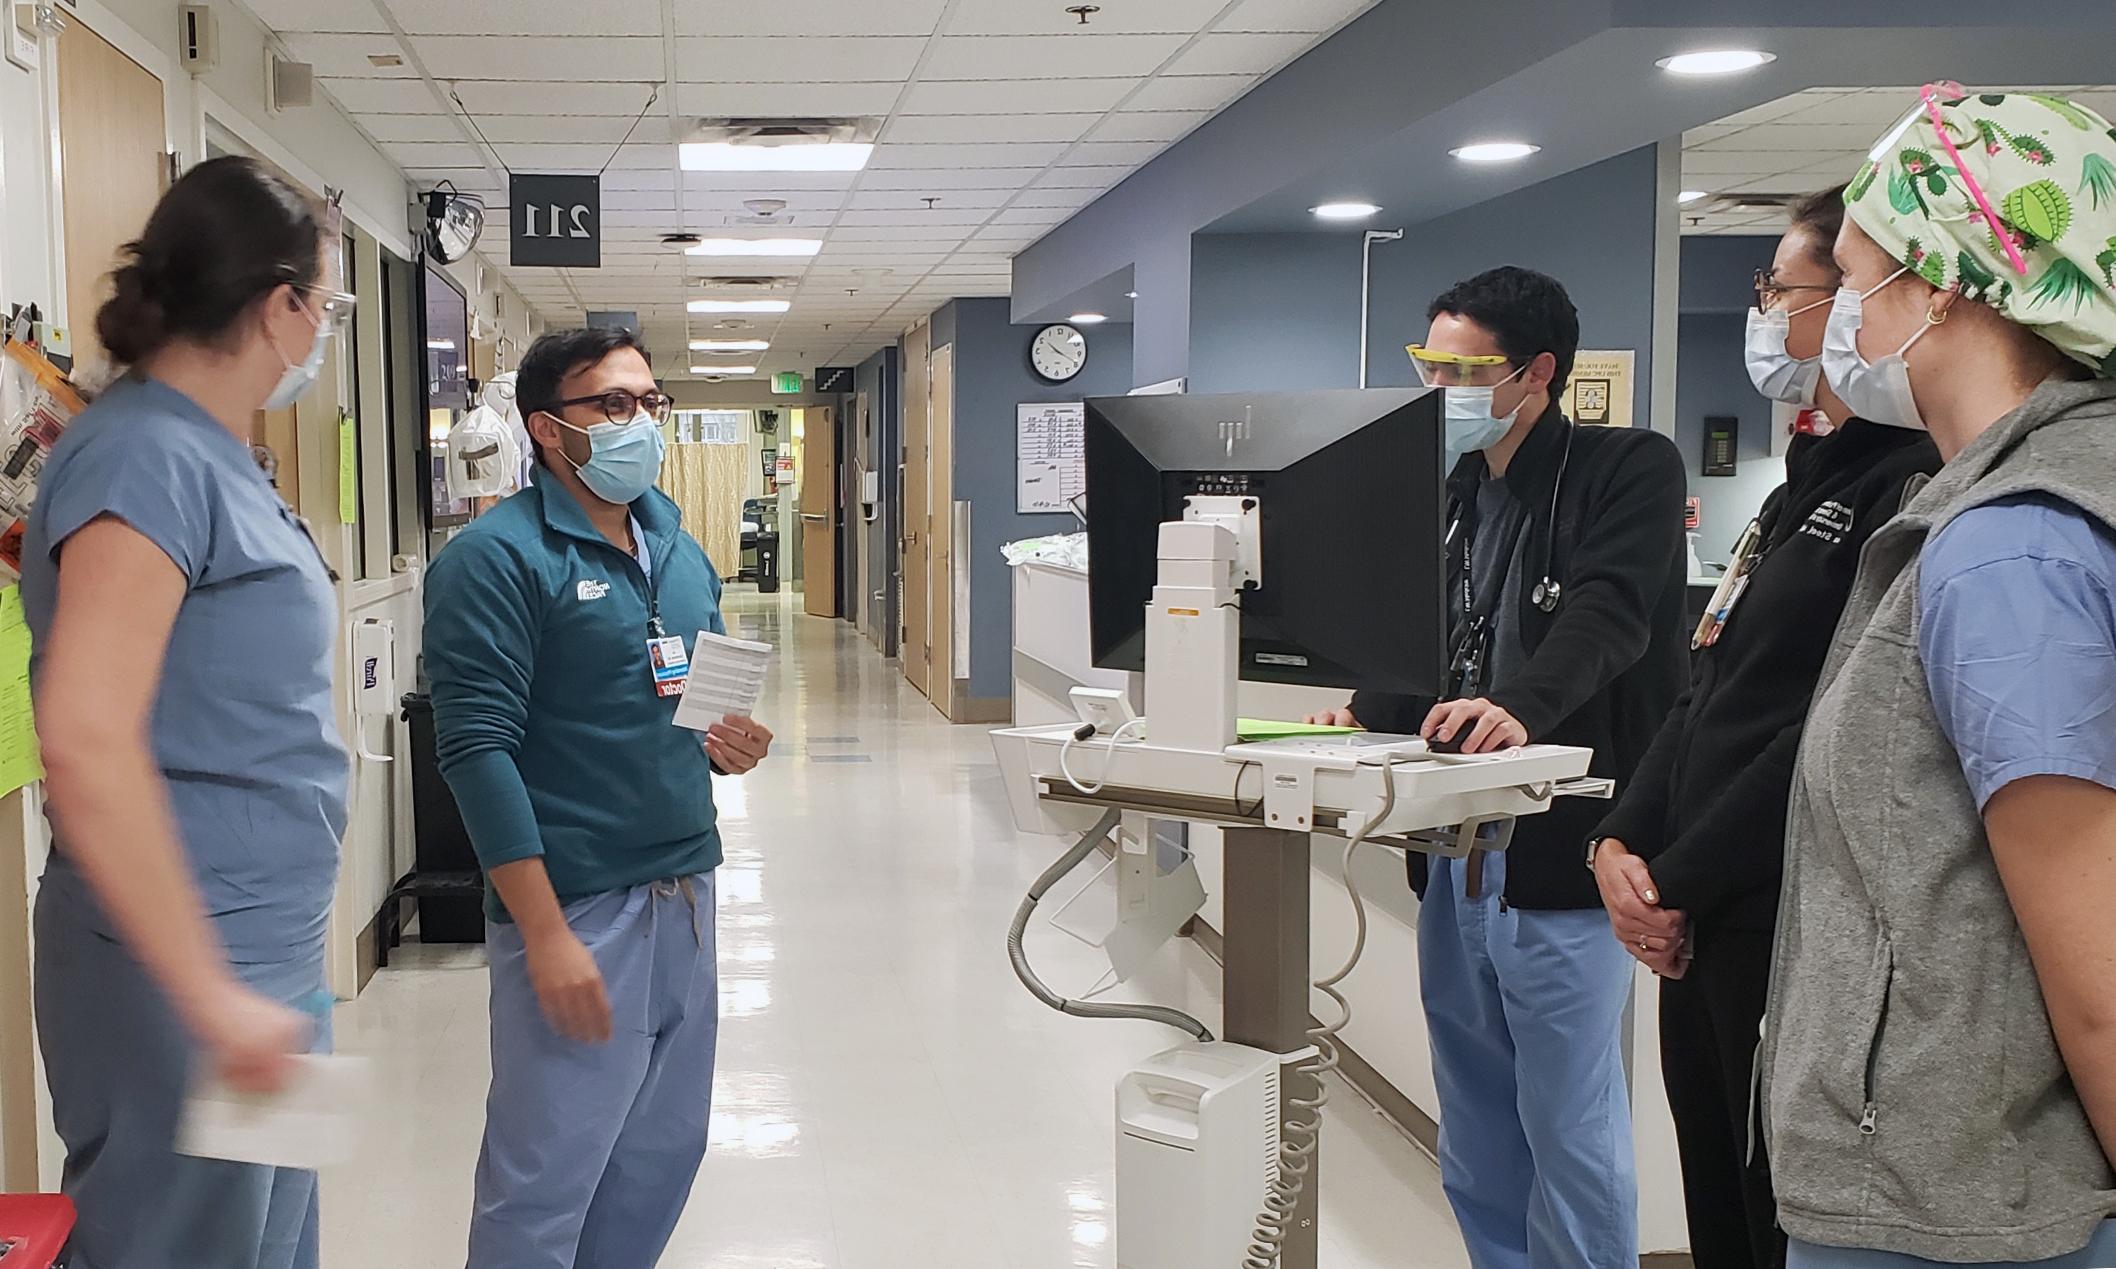 杰·布拉姆哈特的画像.D. 在医院里和住院医生交谈